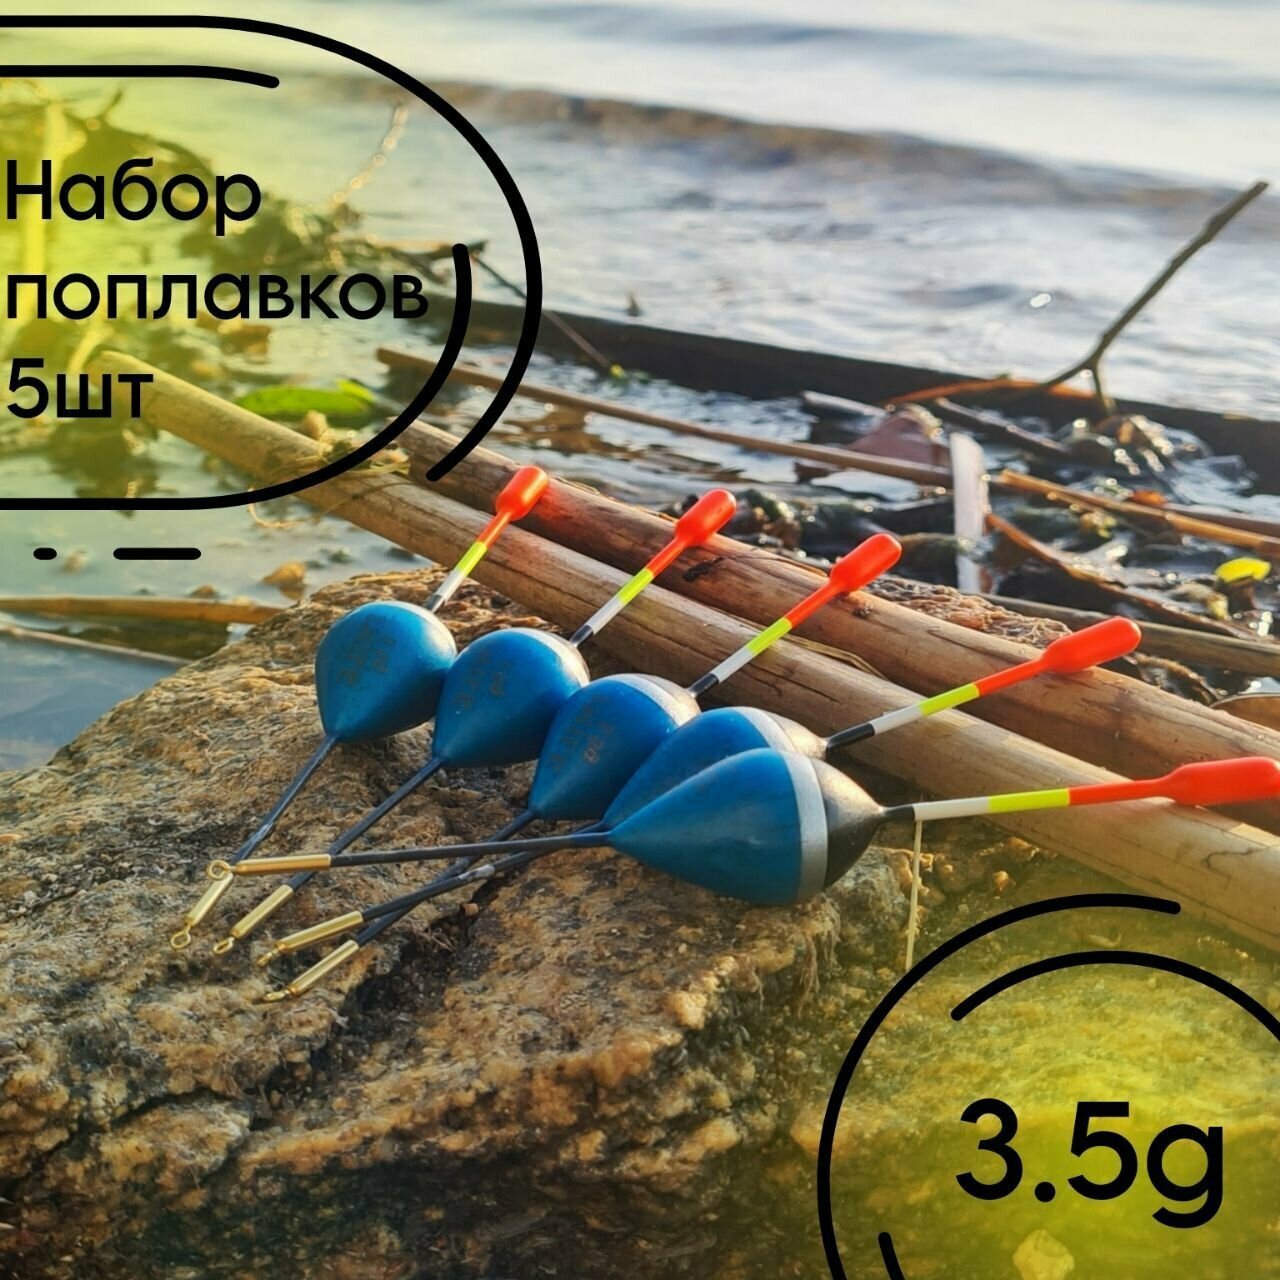 Поплавок для рыбалки из бальсы высота 13.5 см 3.5 гр для летней рыбалки 5 штук.